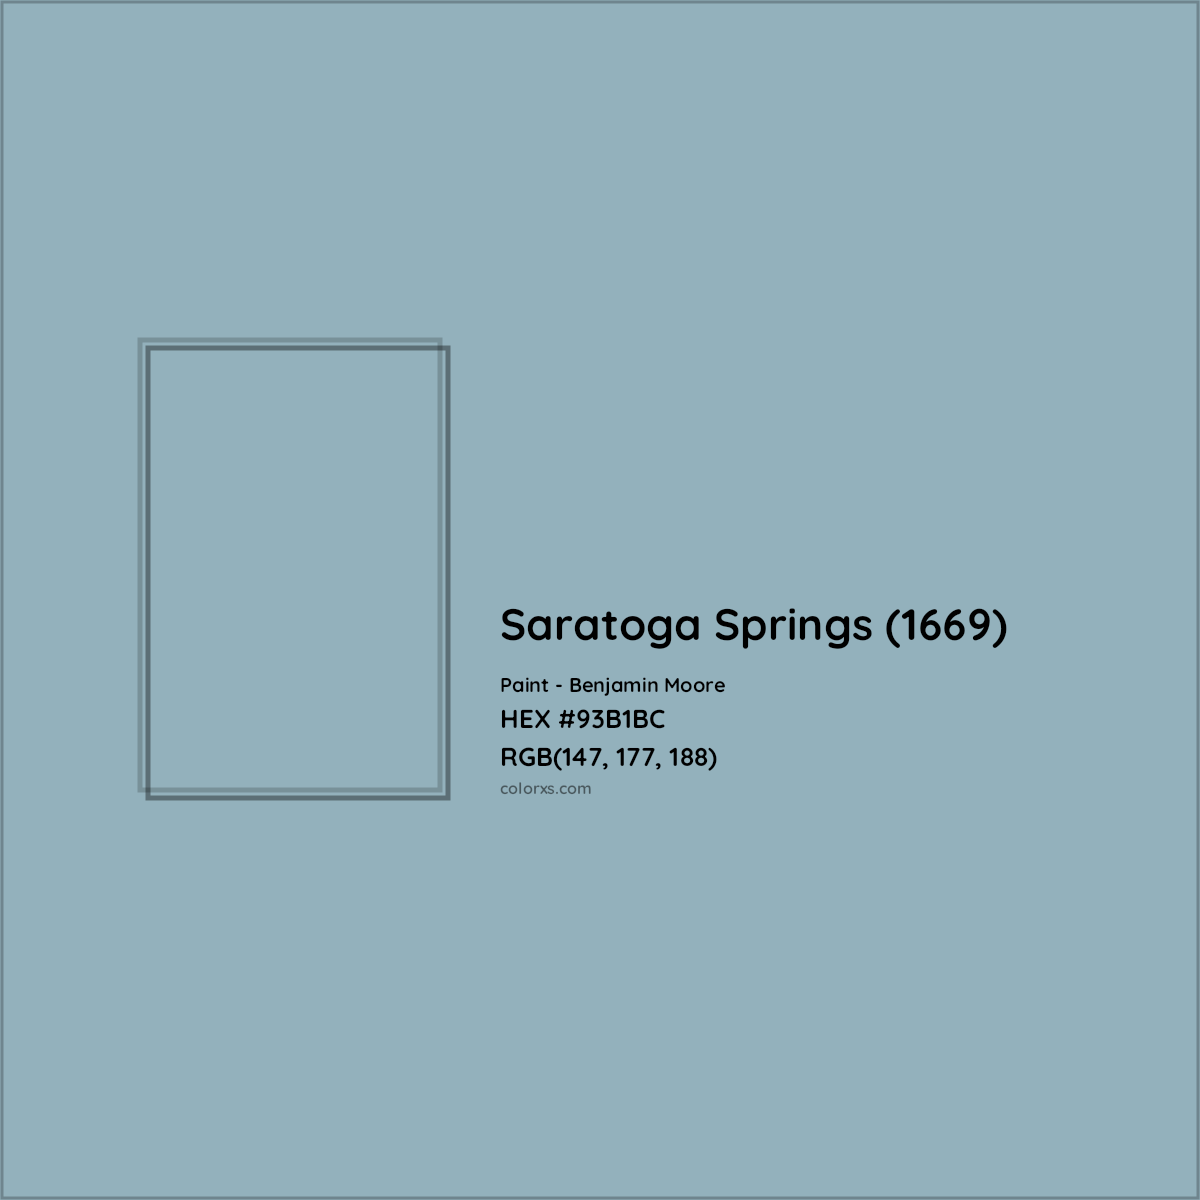 HEX #93B1BC Saratoga Springs (1669) Paint Benjamin Moore - Color Code